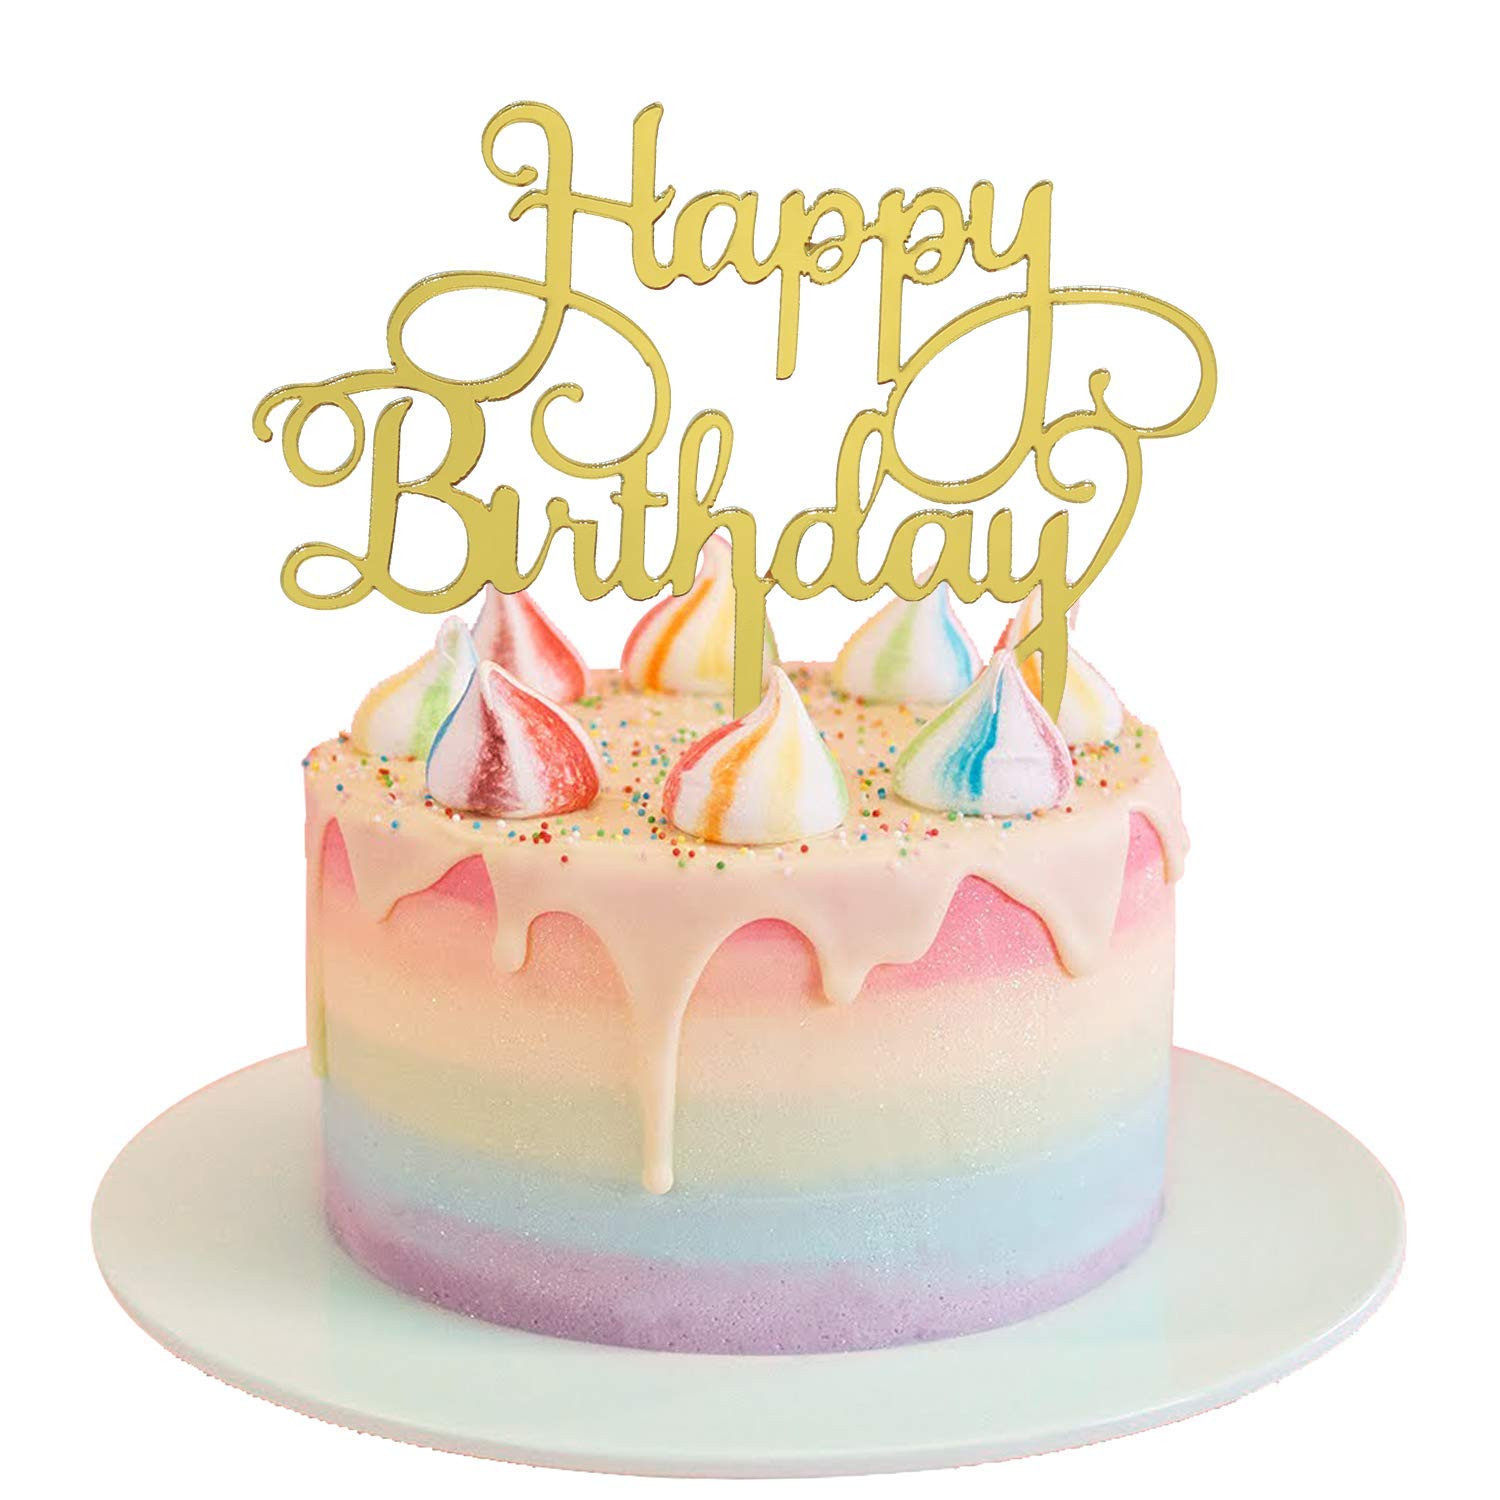 Happy Birthday Cake Pictures
 Acrylic Happy Birthday Cake Topper Acrylic Cake Topper